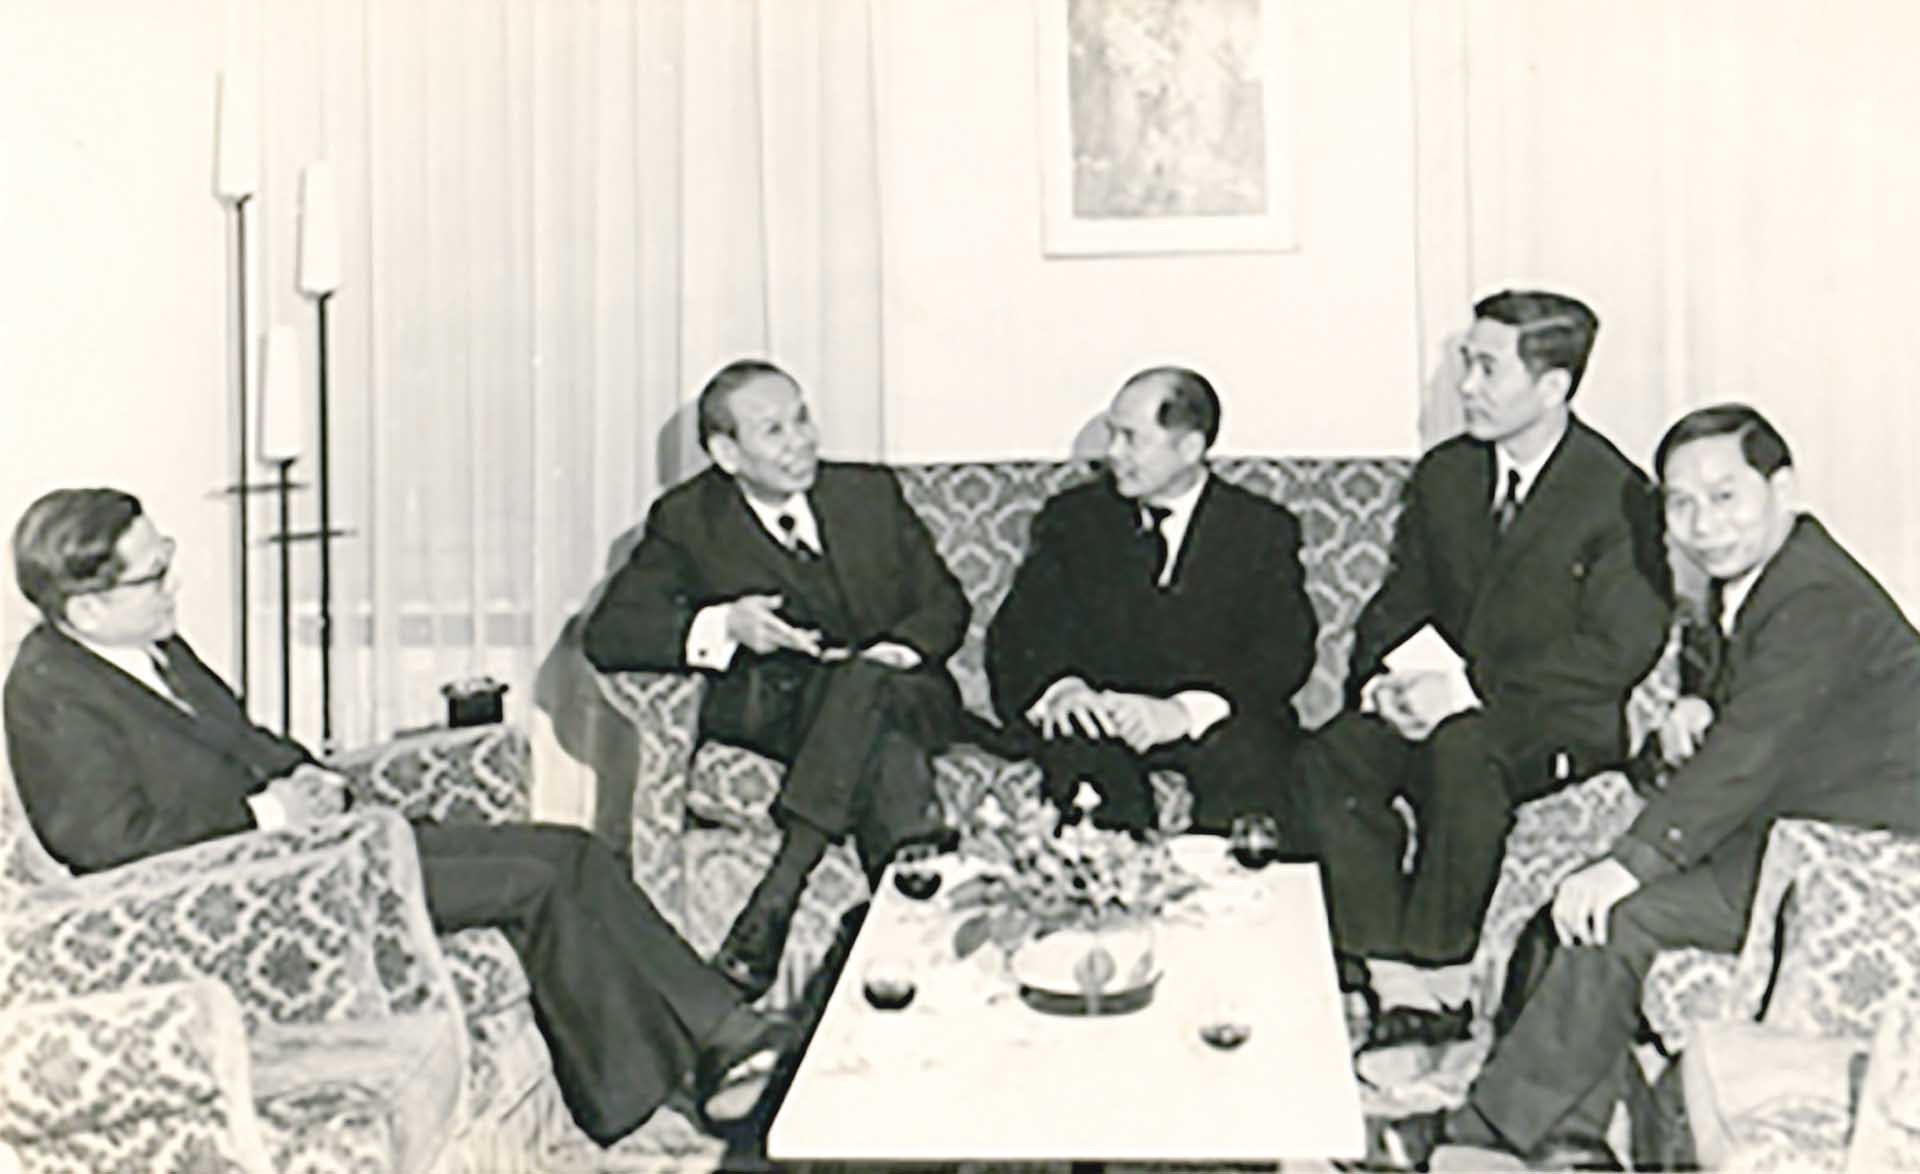 Đoàn Việt Nam Dân chủ Cộng hòa tại Hội nghị Paris về Việt Nam. Ông Nguyễn Minh Vỹ ngồi ngoài cùng bên phải.